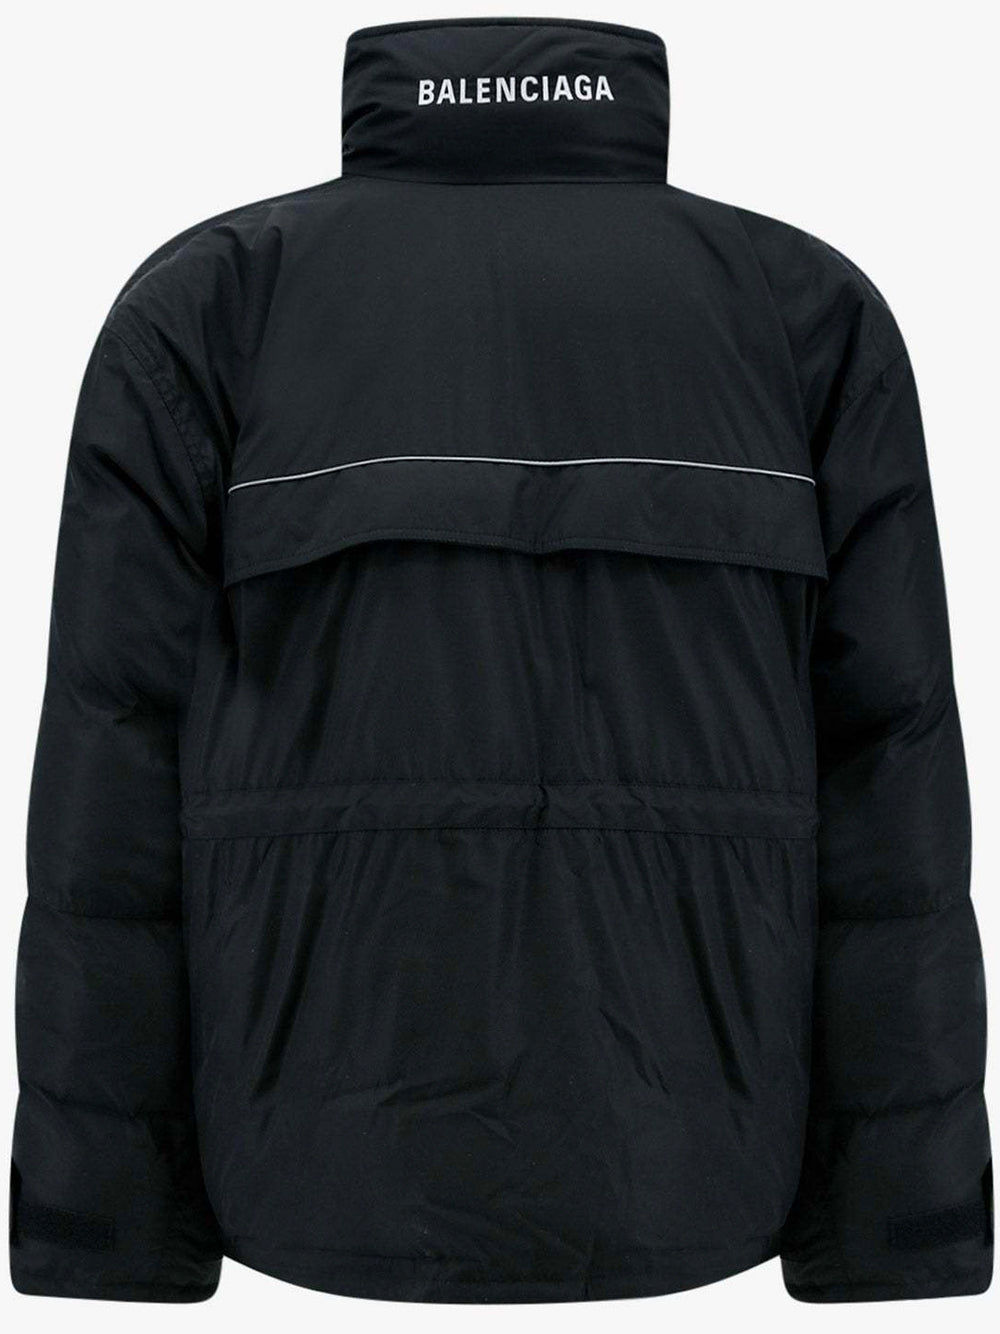 BALENCIAGA UNISEX Oversized Padded Jacket Black - MAISONDEFASHION.COM